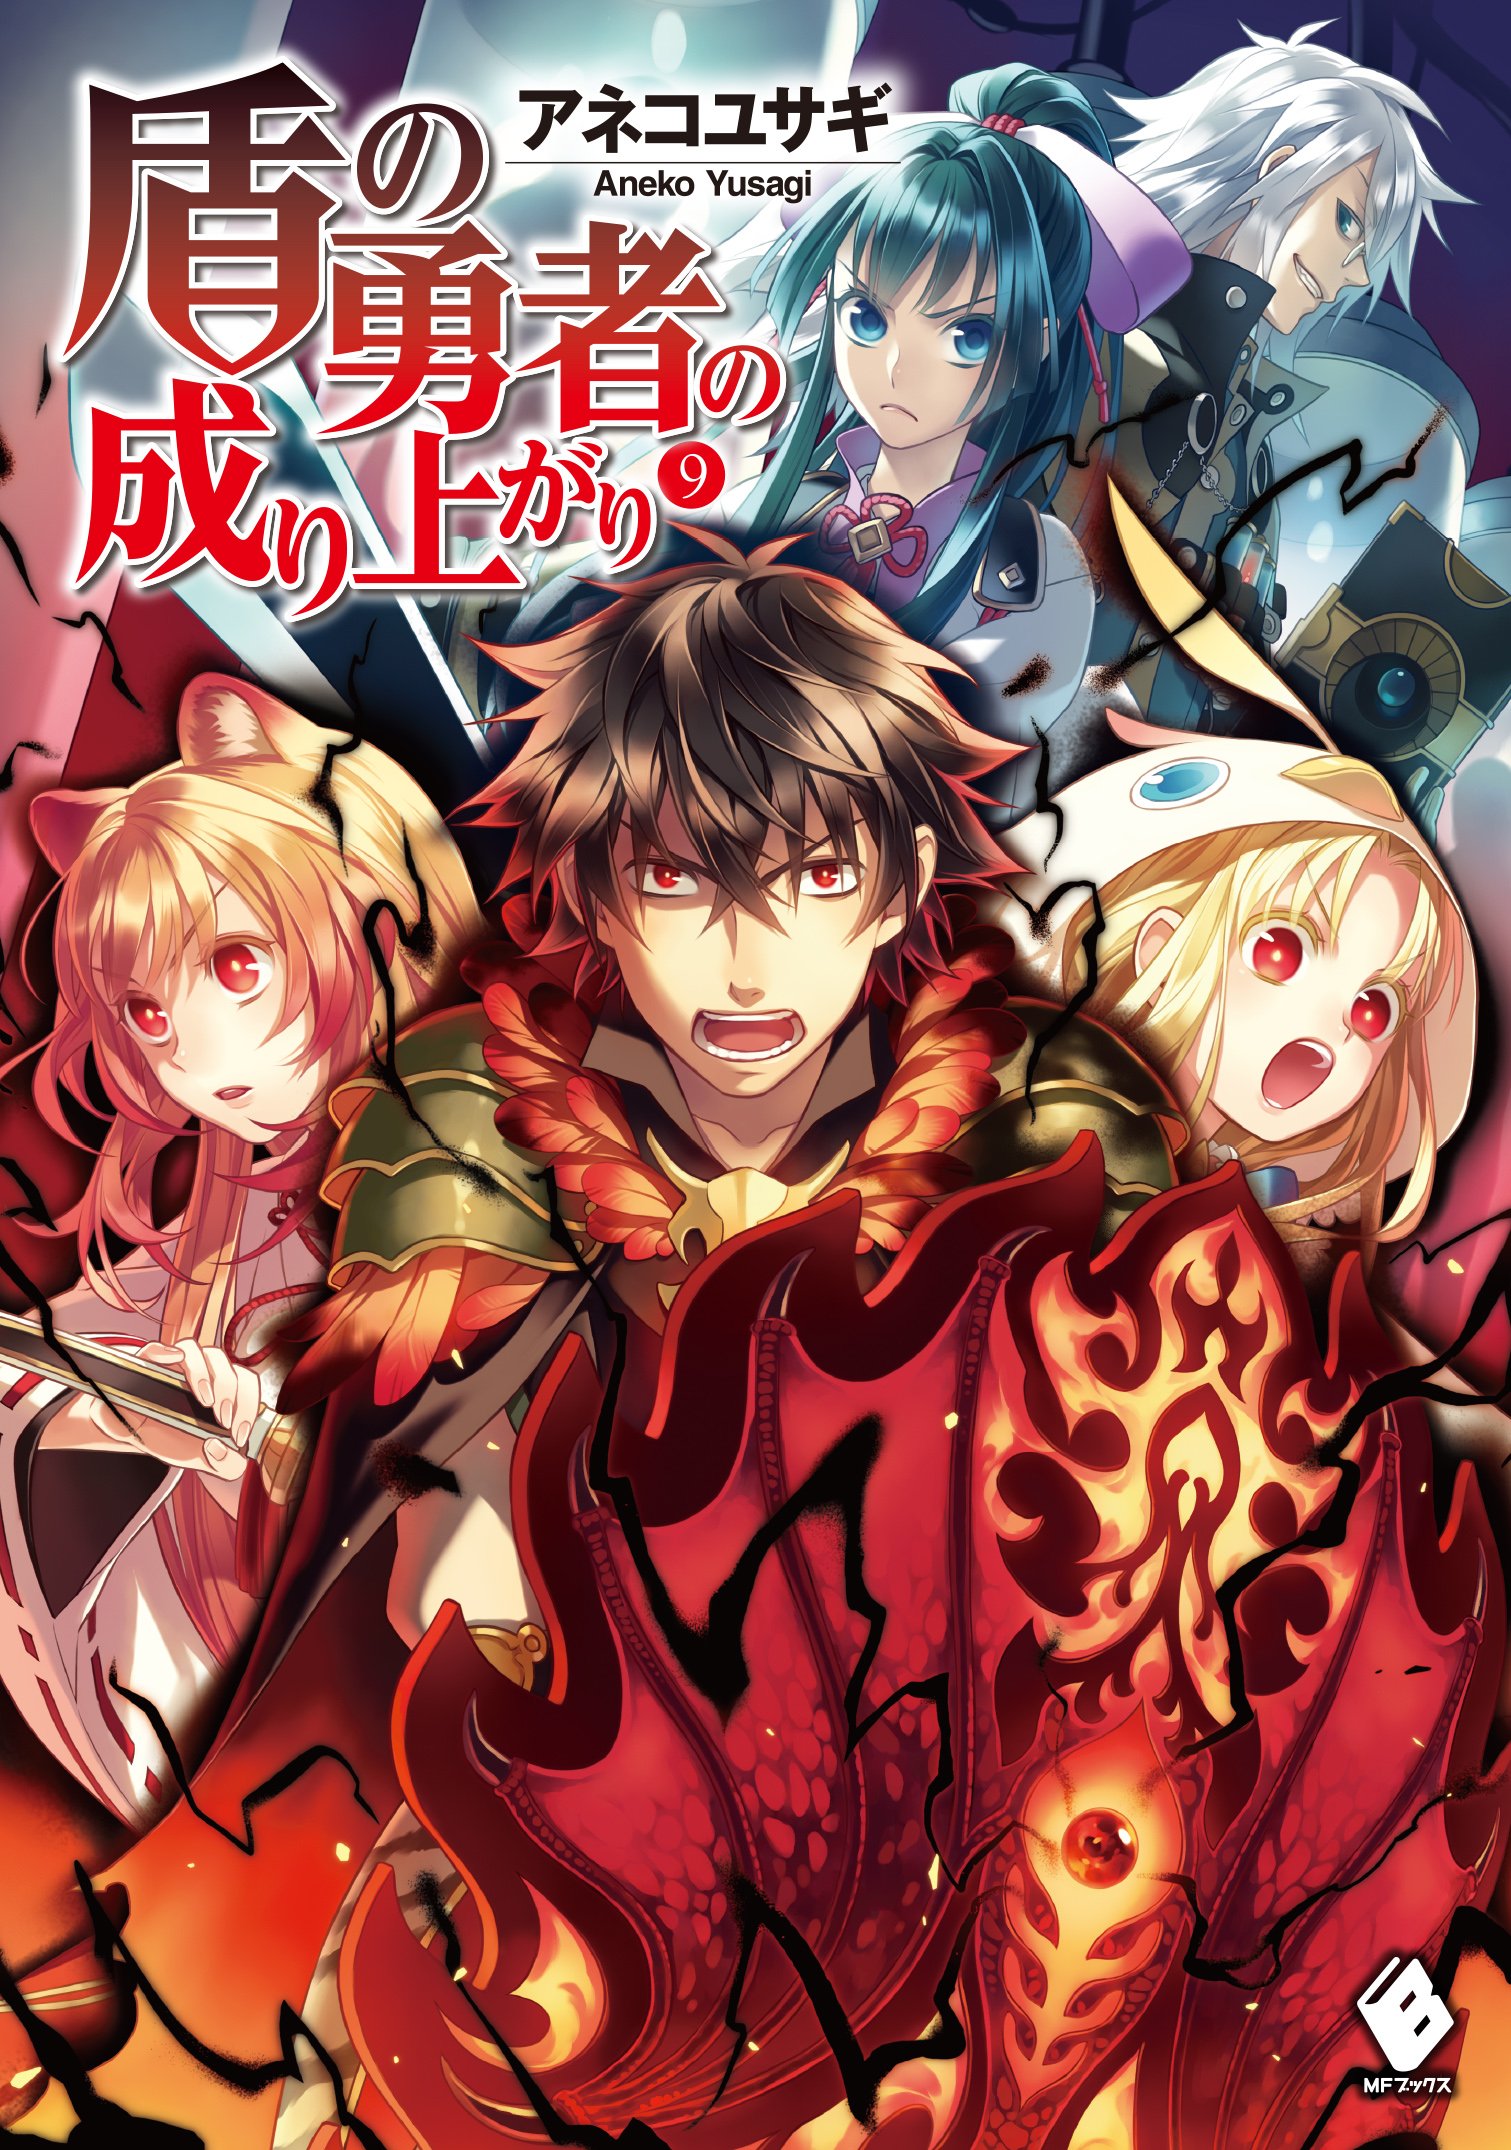 Manga, The Rising of the Shield Hero Wiki